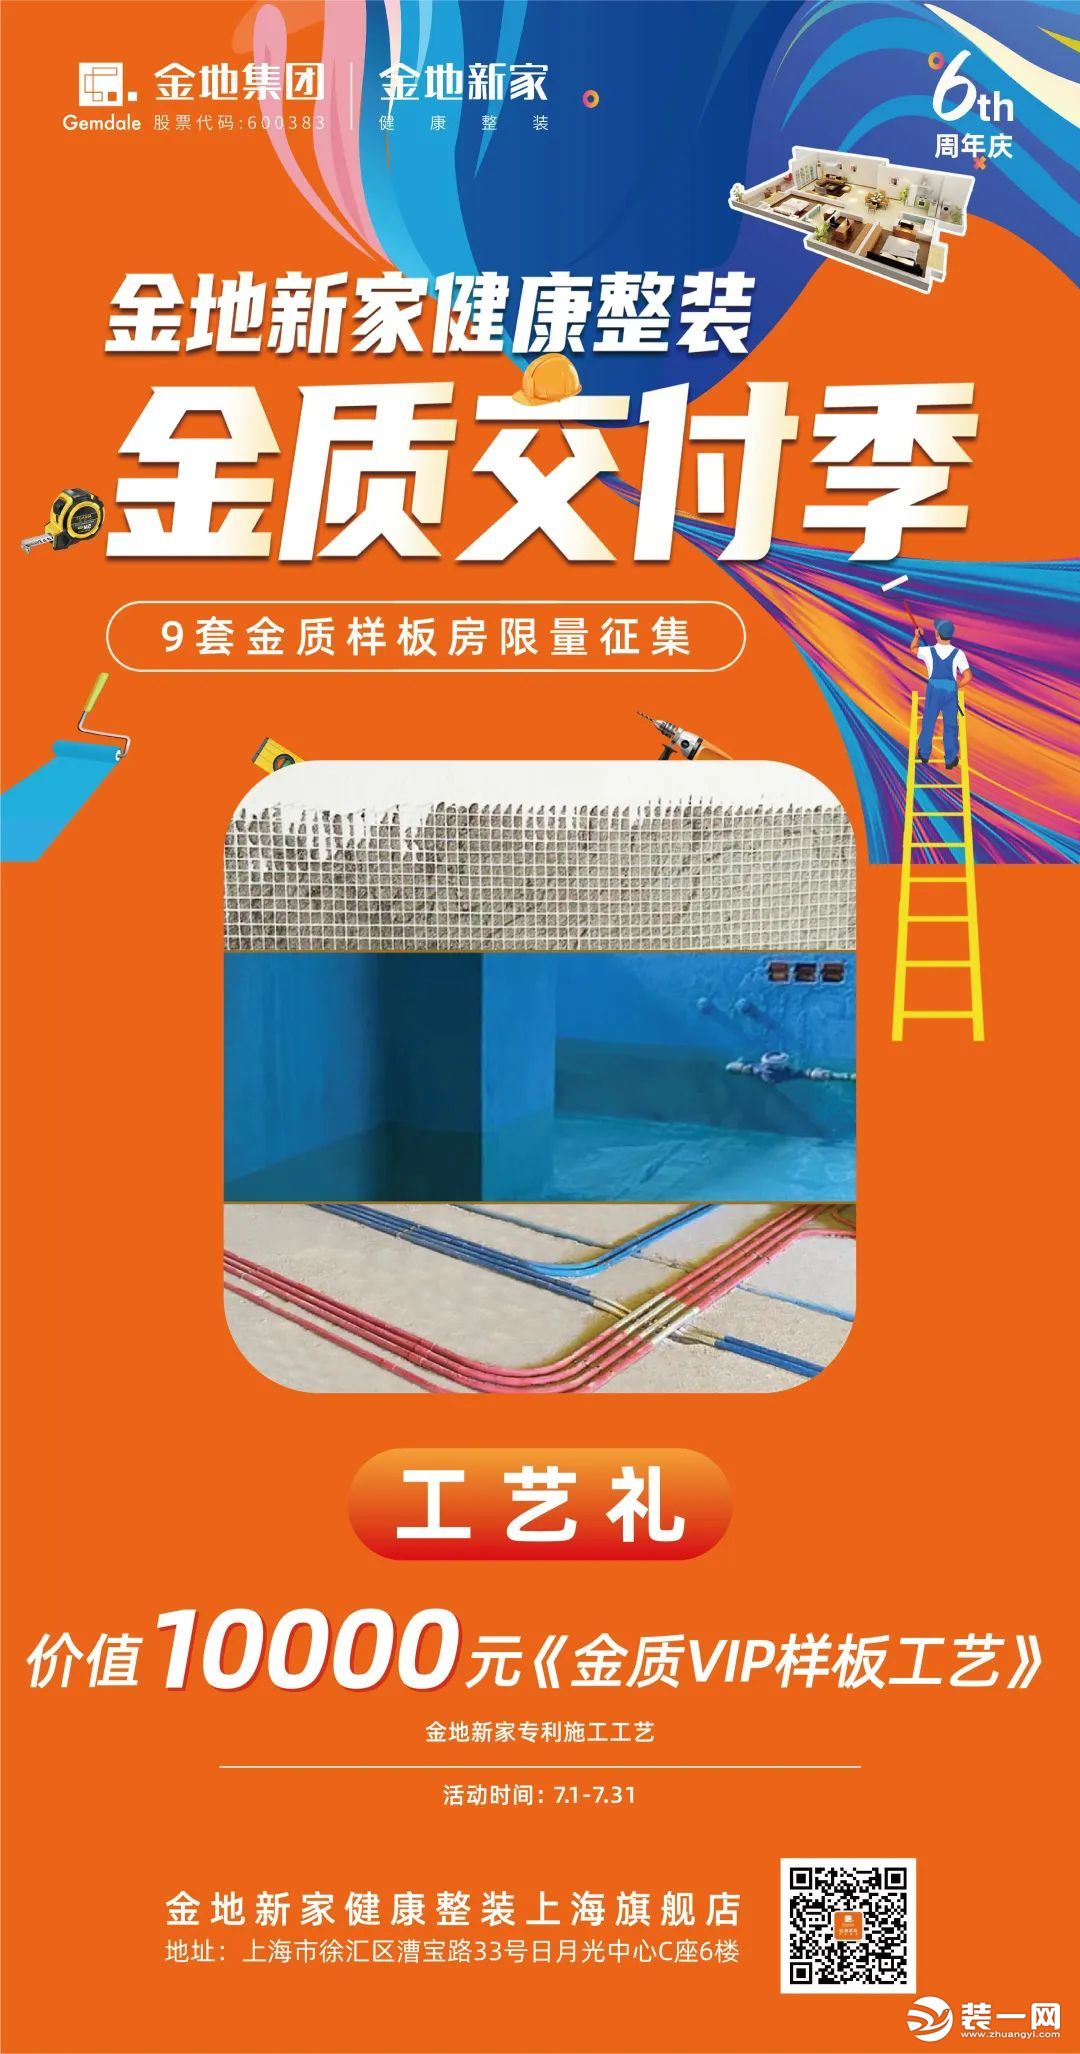 上海金地新家装饰活动宣传图